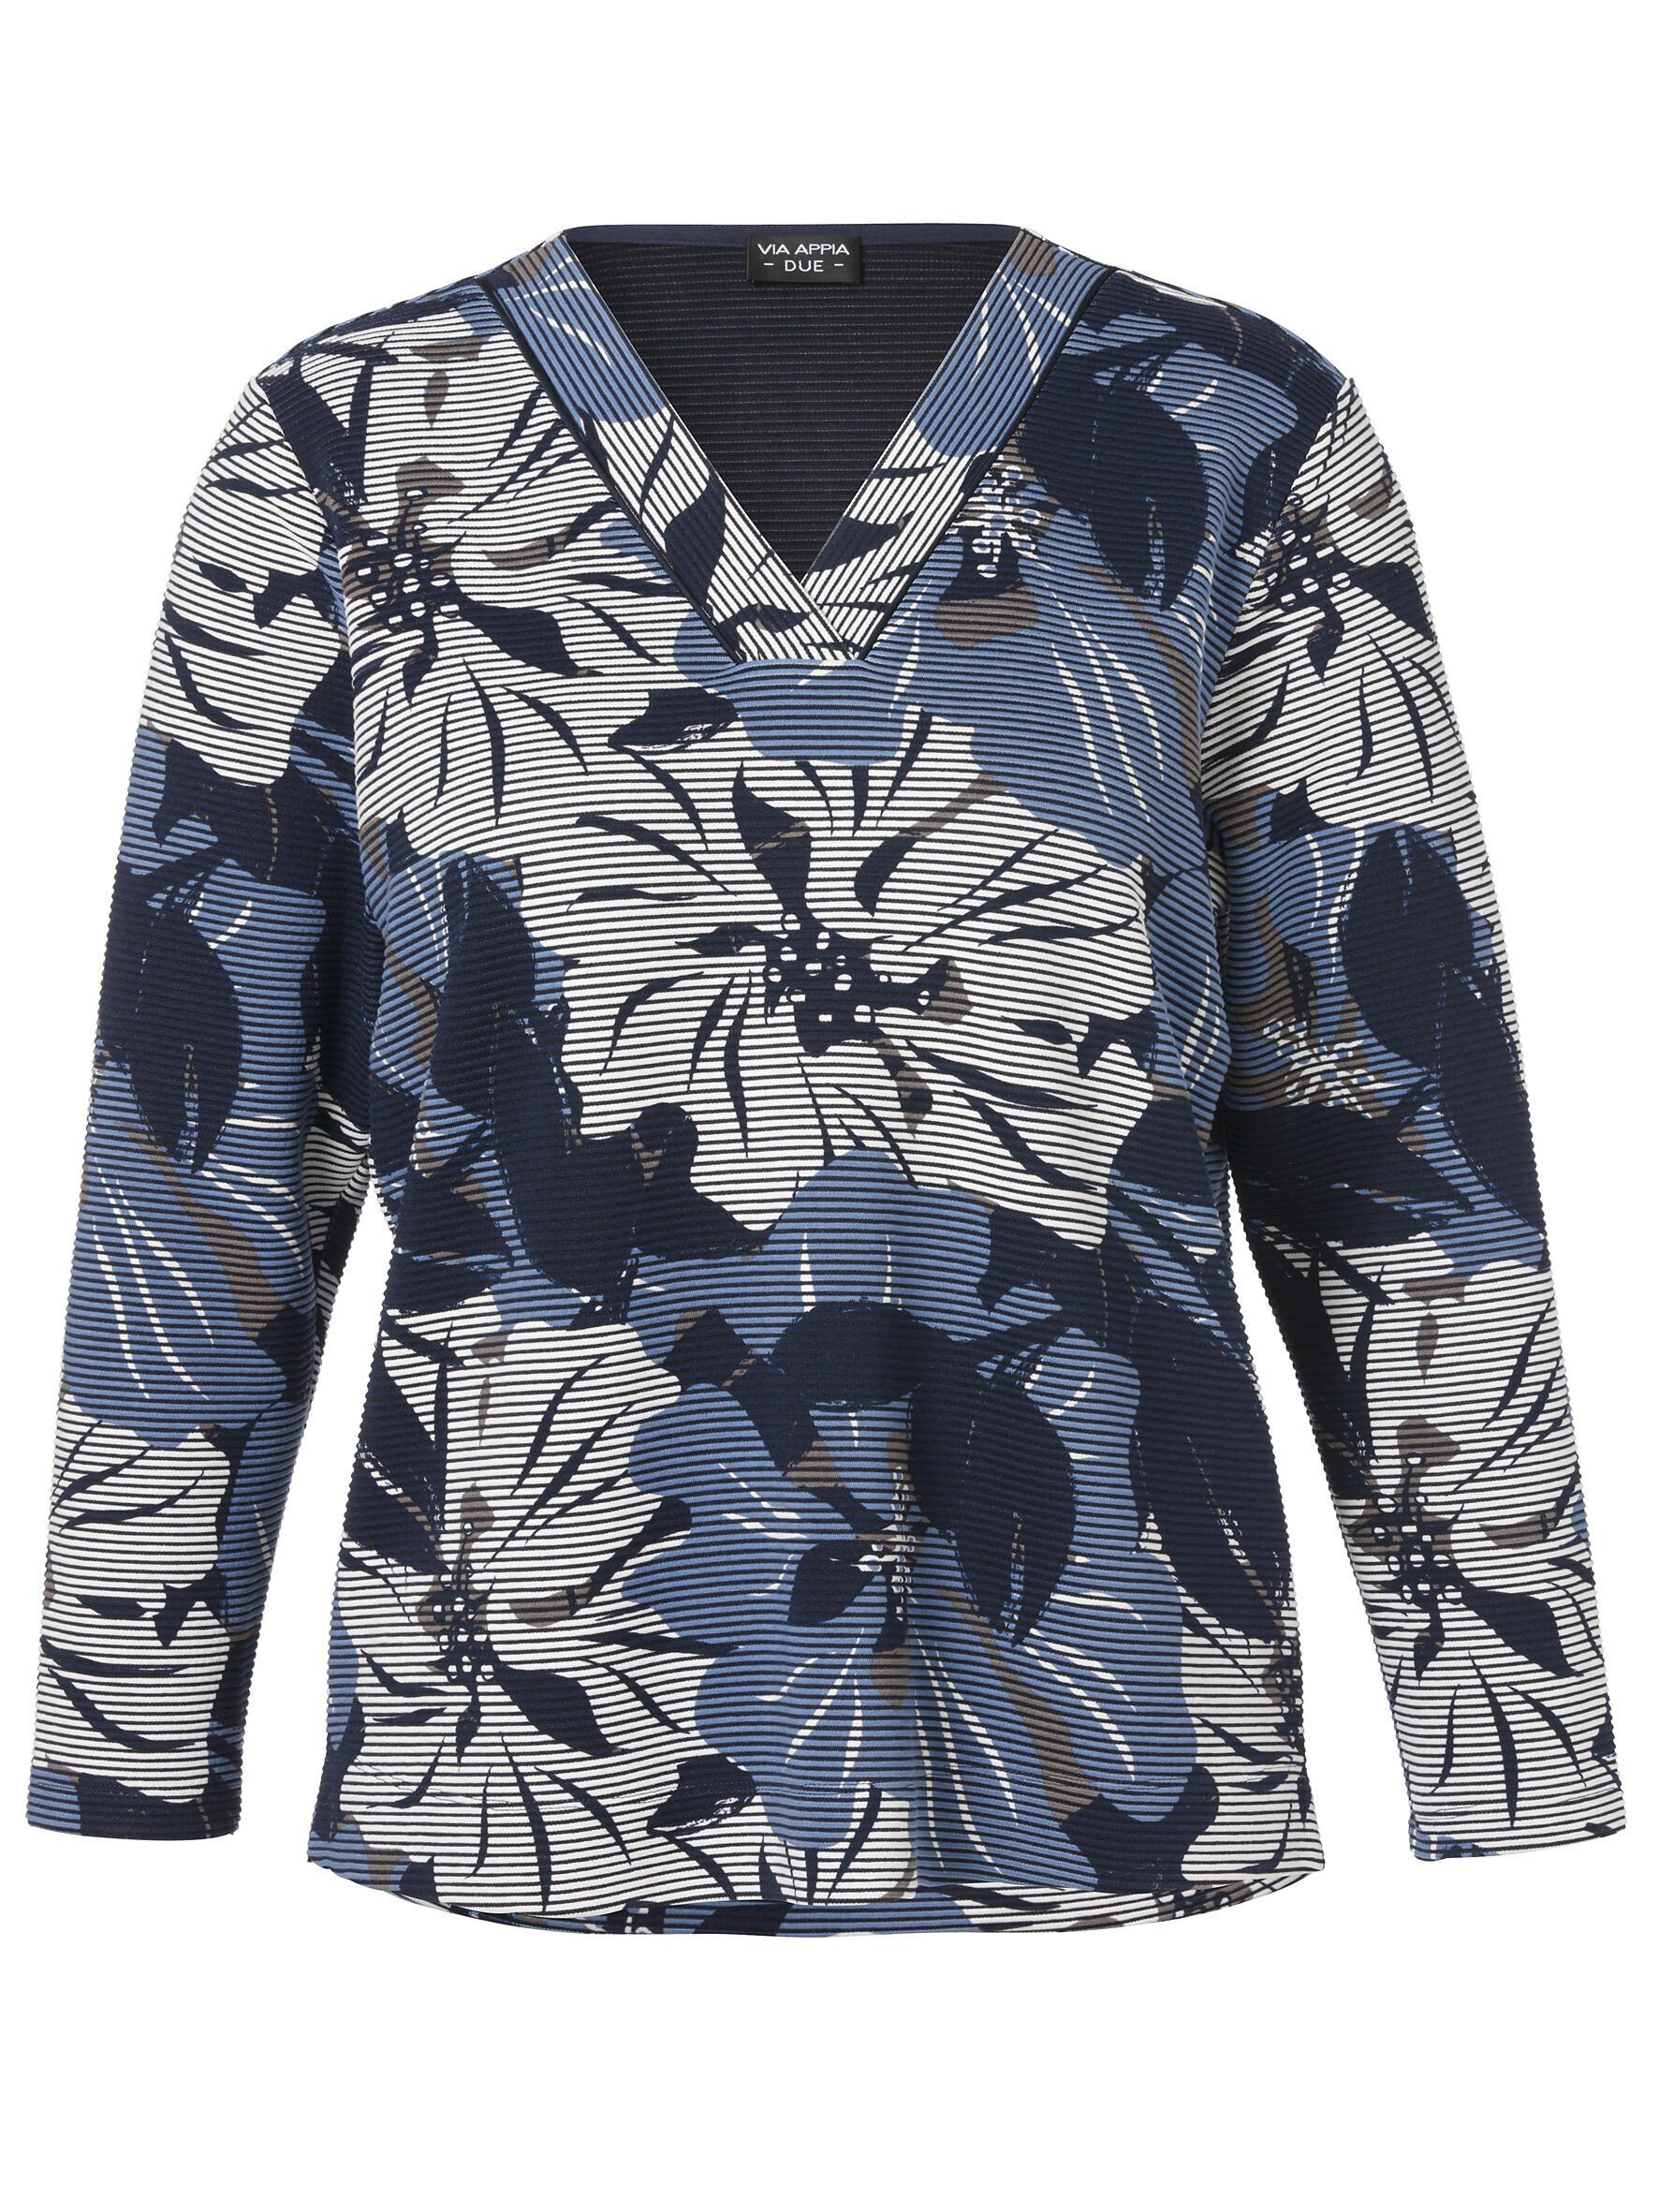 Sweatshirt Blumen-Streifen-Mix APPIA mit DUE VIA